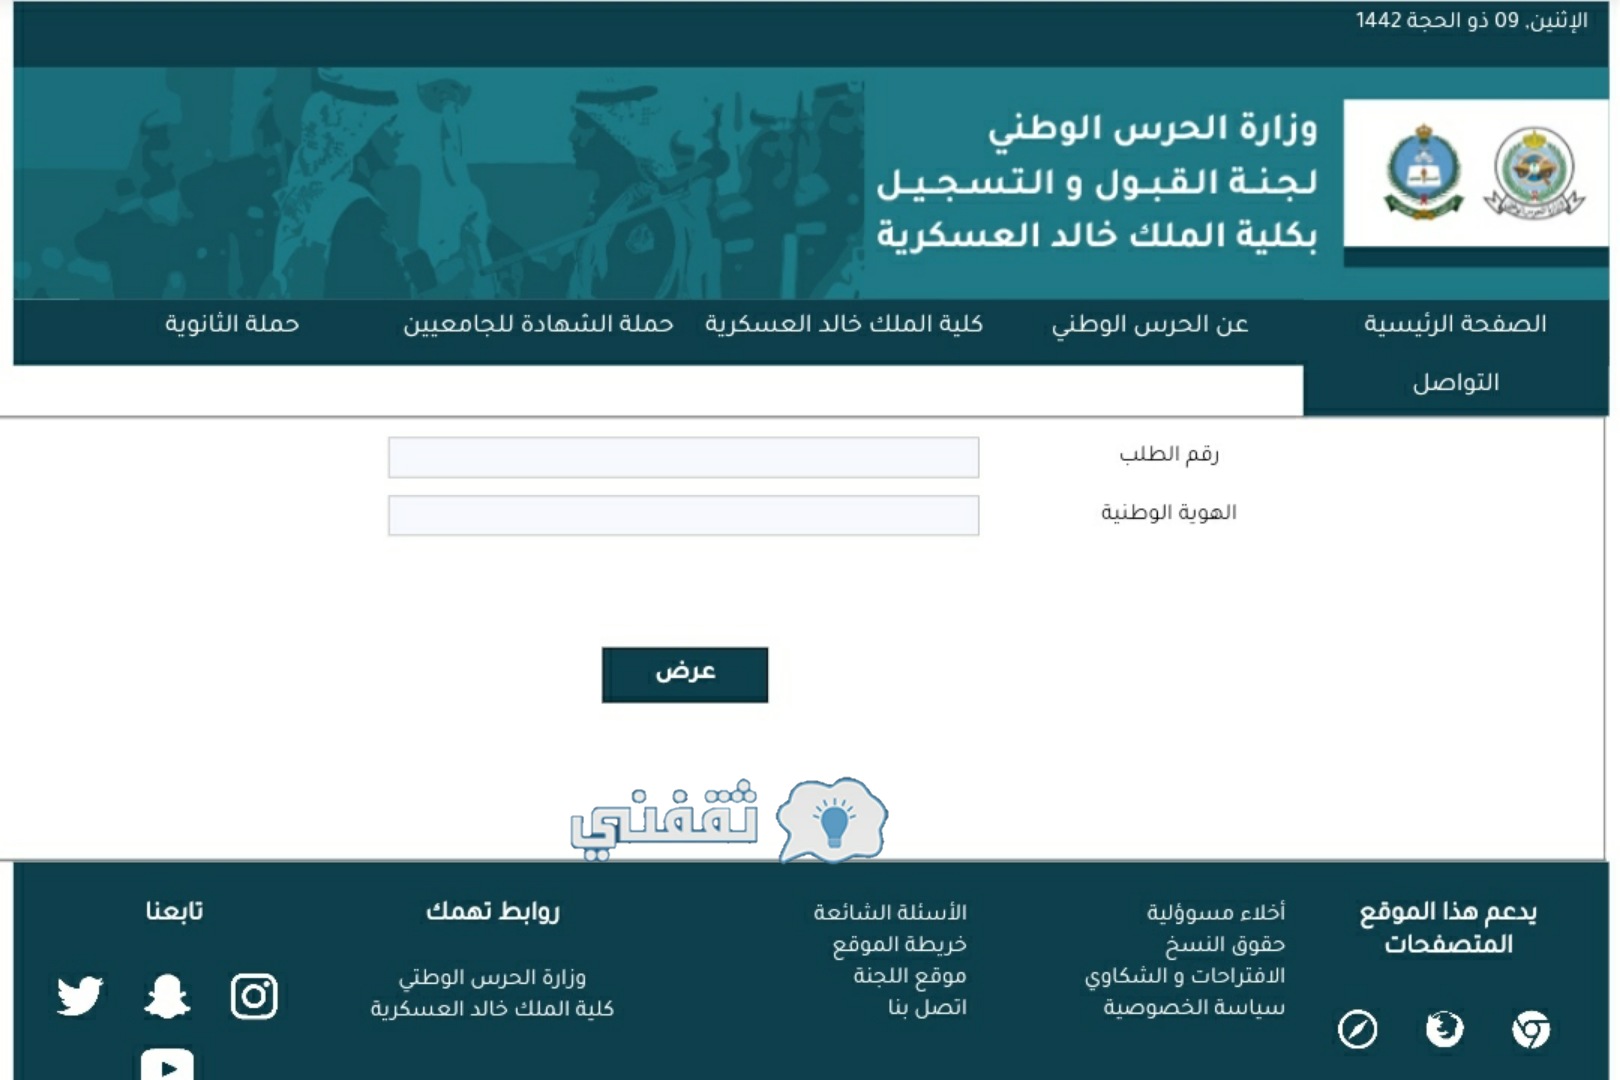 صفحة إعلان نتائج كلية الملك خالد